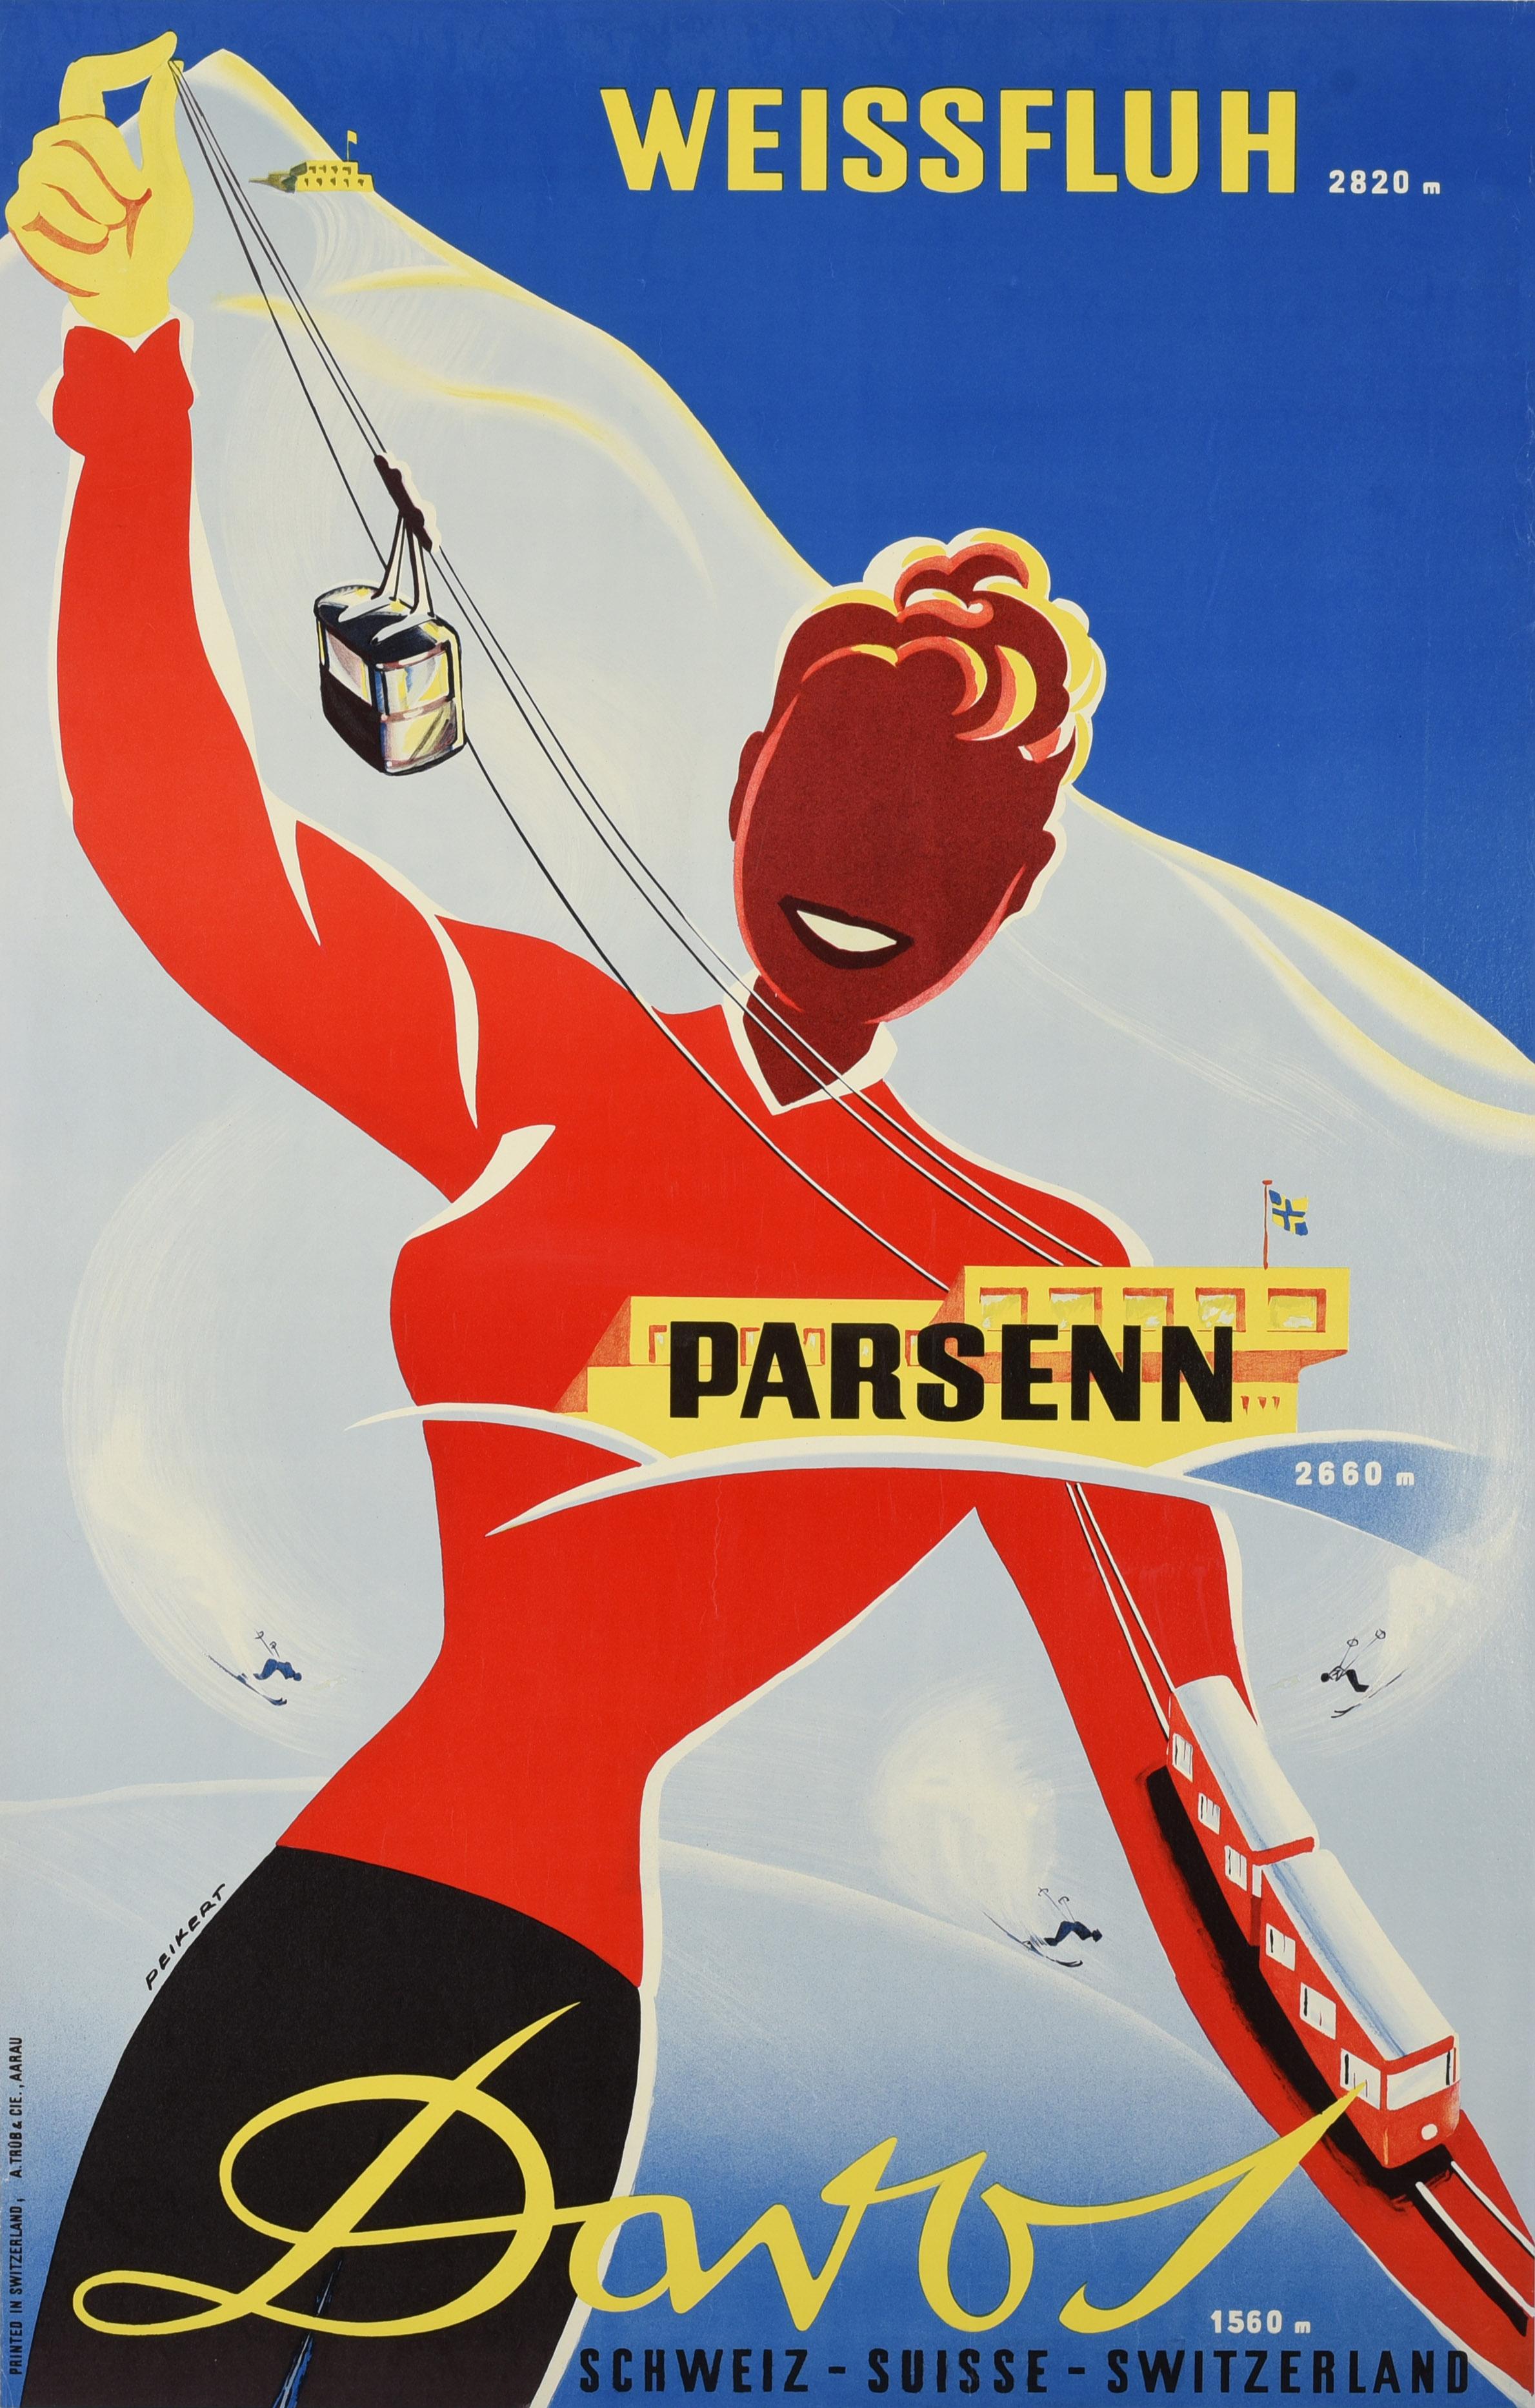 Martin Peikert Print – Original-Vintage-Ski-Wintersport-Resort-Poster, Davos Weissfluh, Schweizer Peikert